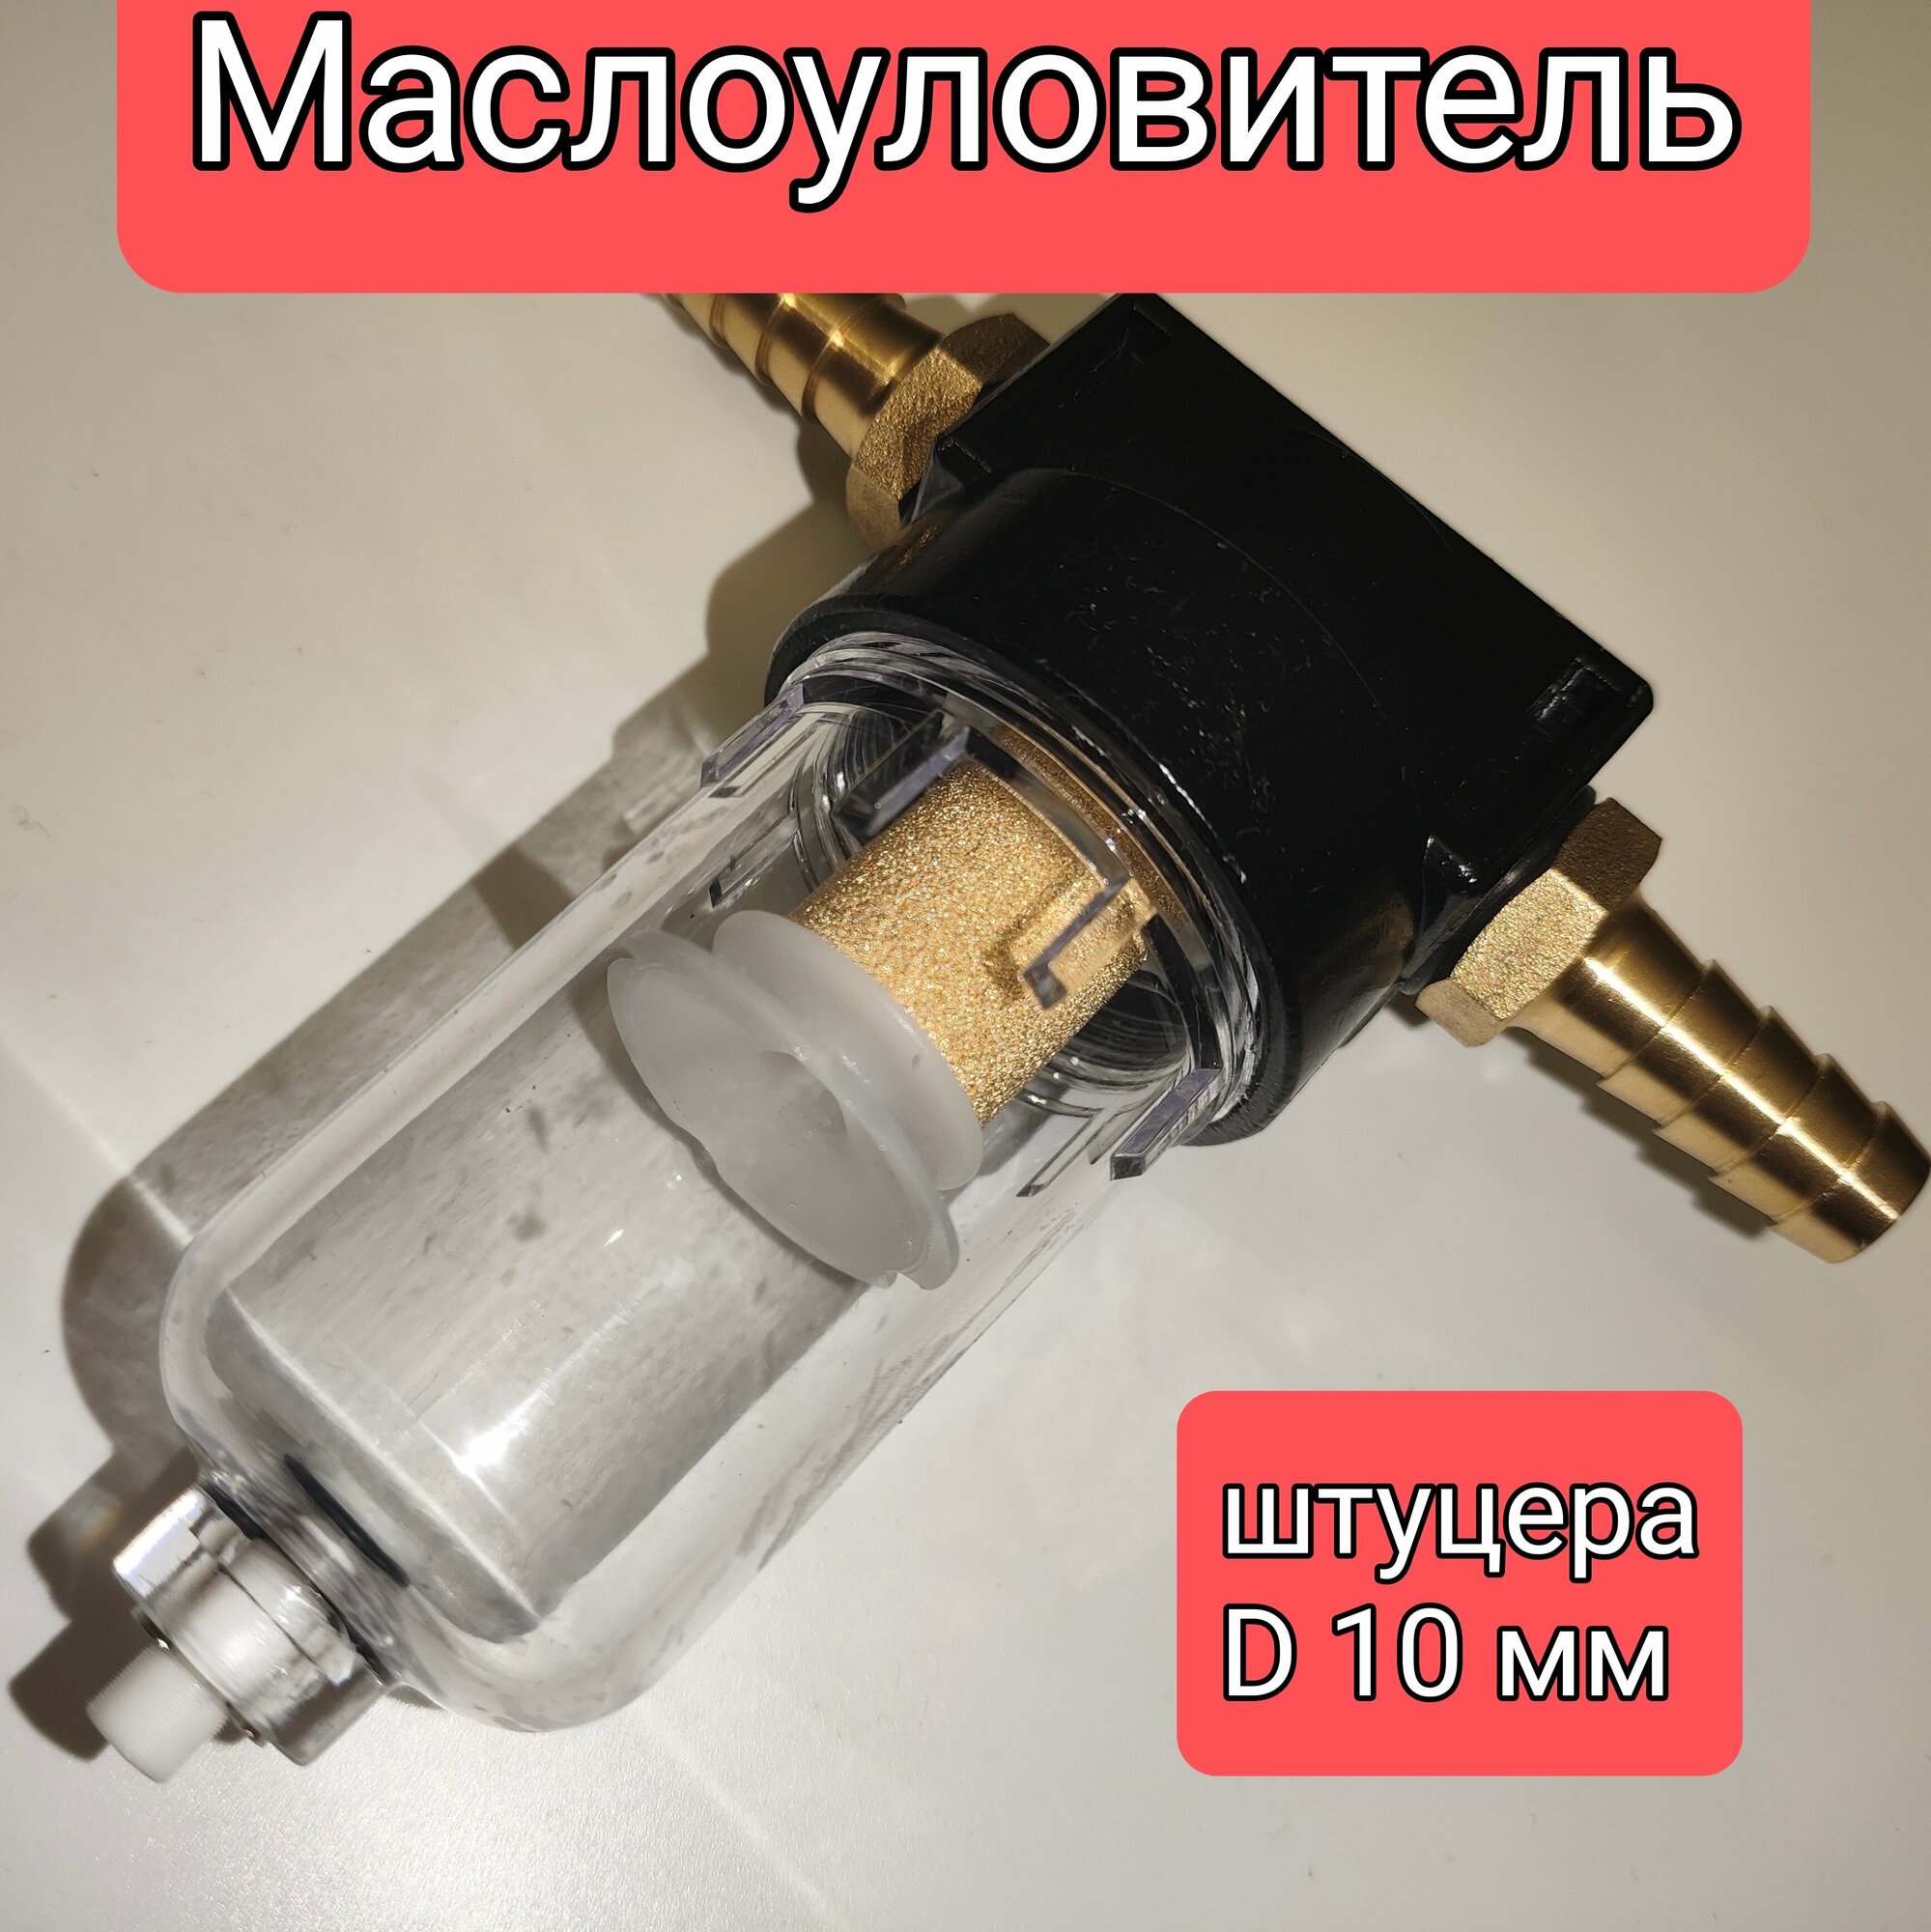 Маслоуловитель фильтр картерных газов DAP штуцера 10 мм.